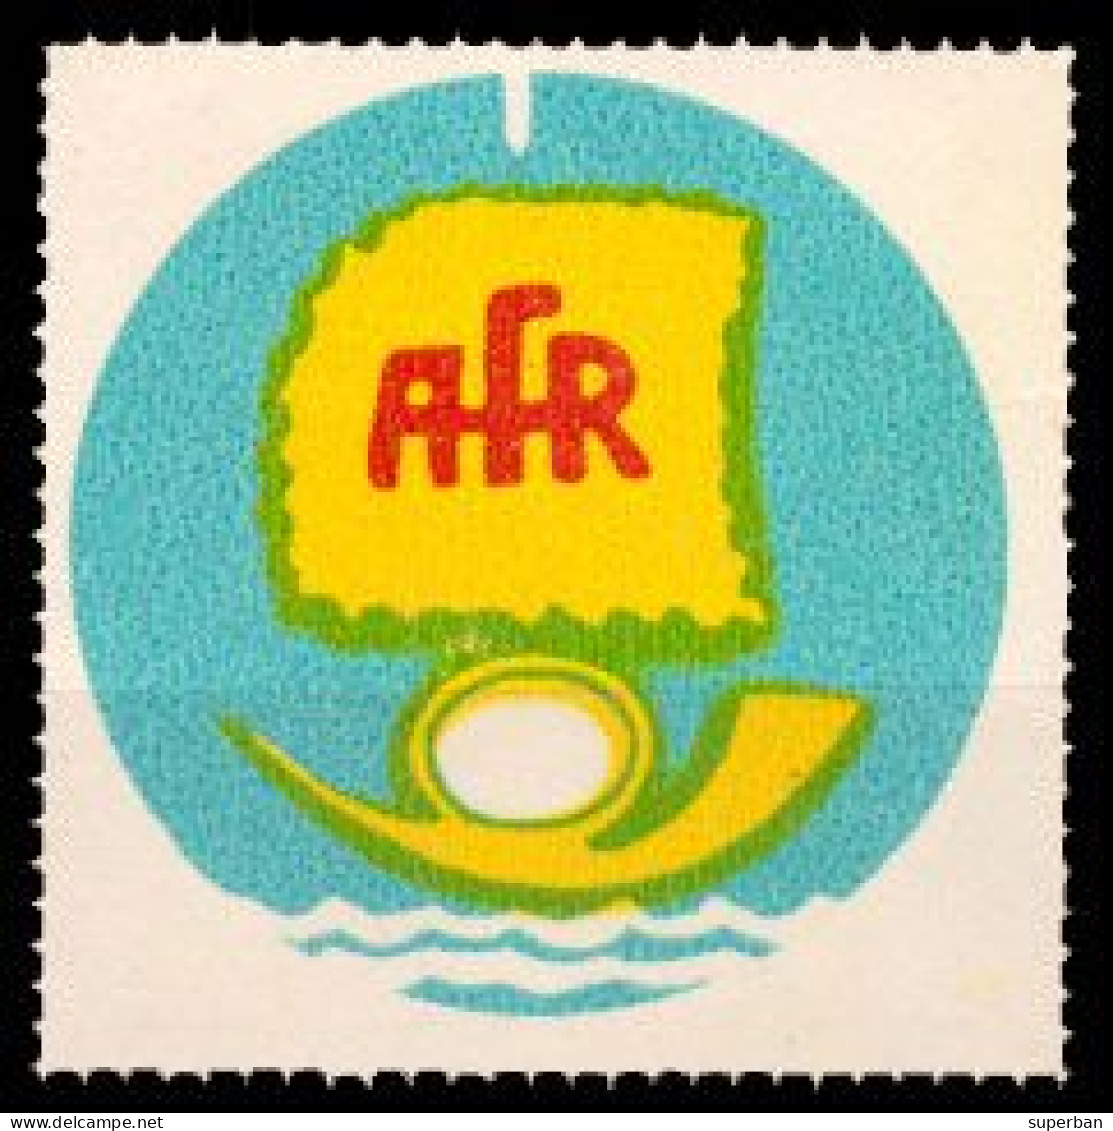 ROUMANIE / ROMANIA - VIGNETTE / CINDERELLA - ASOCIATIA FILATELISTILOR Din ROMÂNIA : 1965 - 1970 ? - MNH - RRR ! (an043) - Revenue Stamps